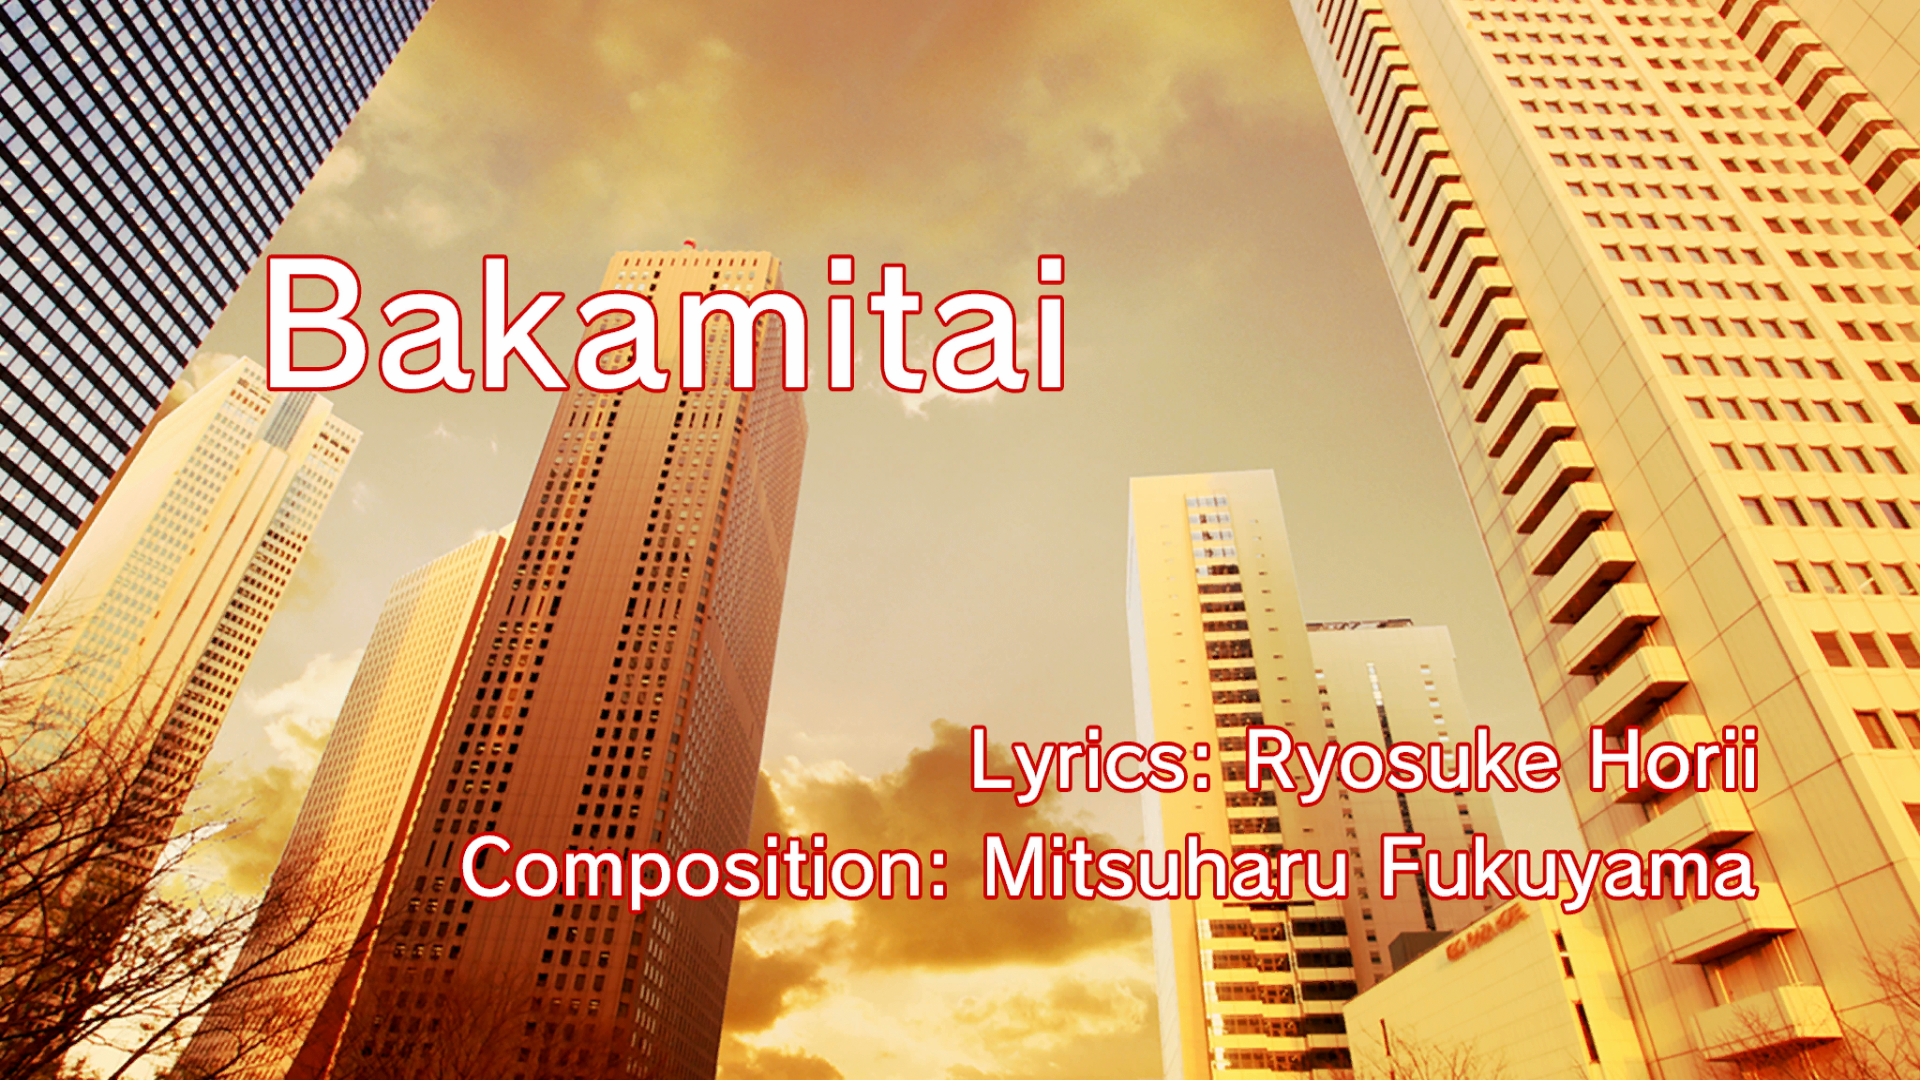 Yakuza - 馬鹿みたい / Baka Mitai cover female version with lyrics and English  translation  Yakuza - 馬鹿みたい / Baka Mitai cover female version with lyrics  and English translation Dame da ne!